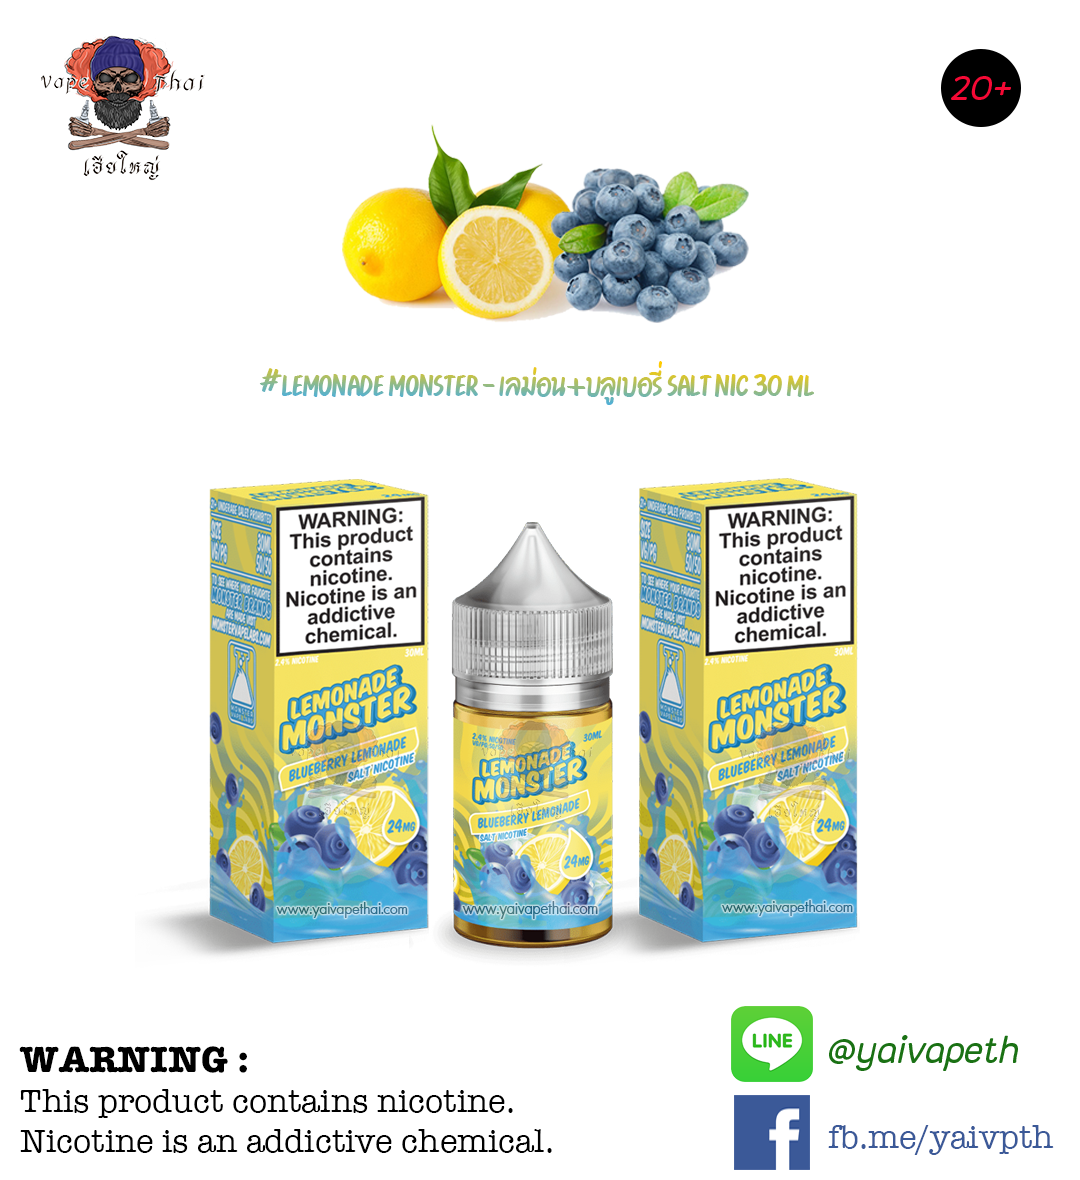 บลูเบอรี่เลม่อน – น้ำยาบุหรี่ไฟฟ้า Lemonade Monster Blueberry Lemonade Salt Nic 30 ml (U.S.A.) [เย็น] ของแท้ 100%